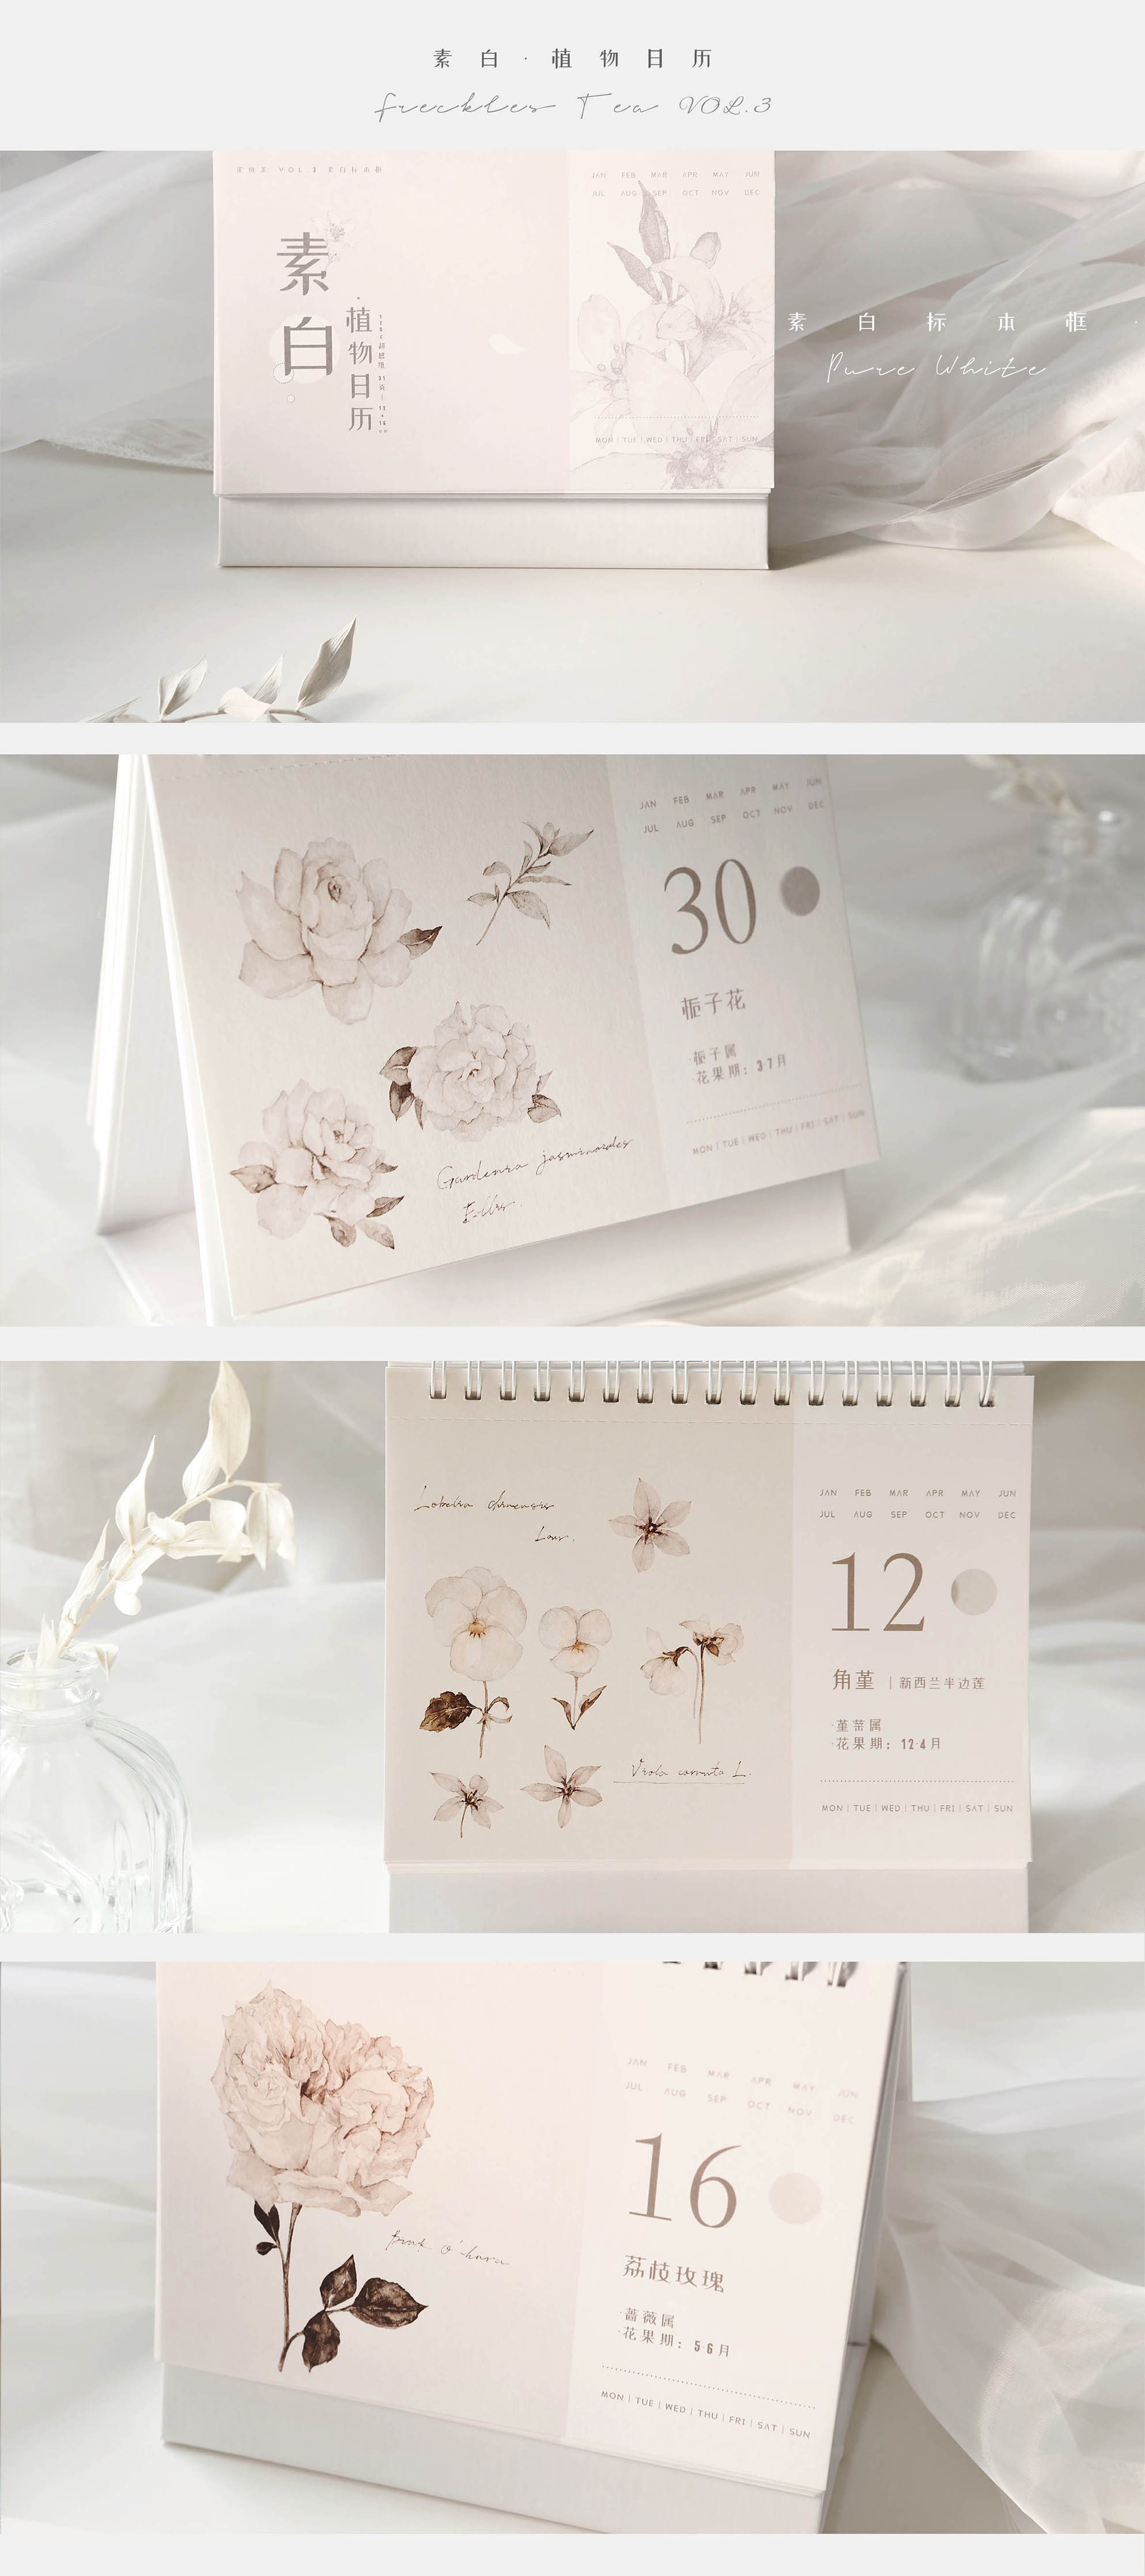 Freckles Tea VOL. 3: Plants Calendar